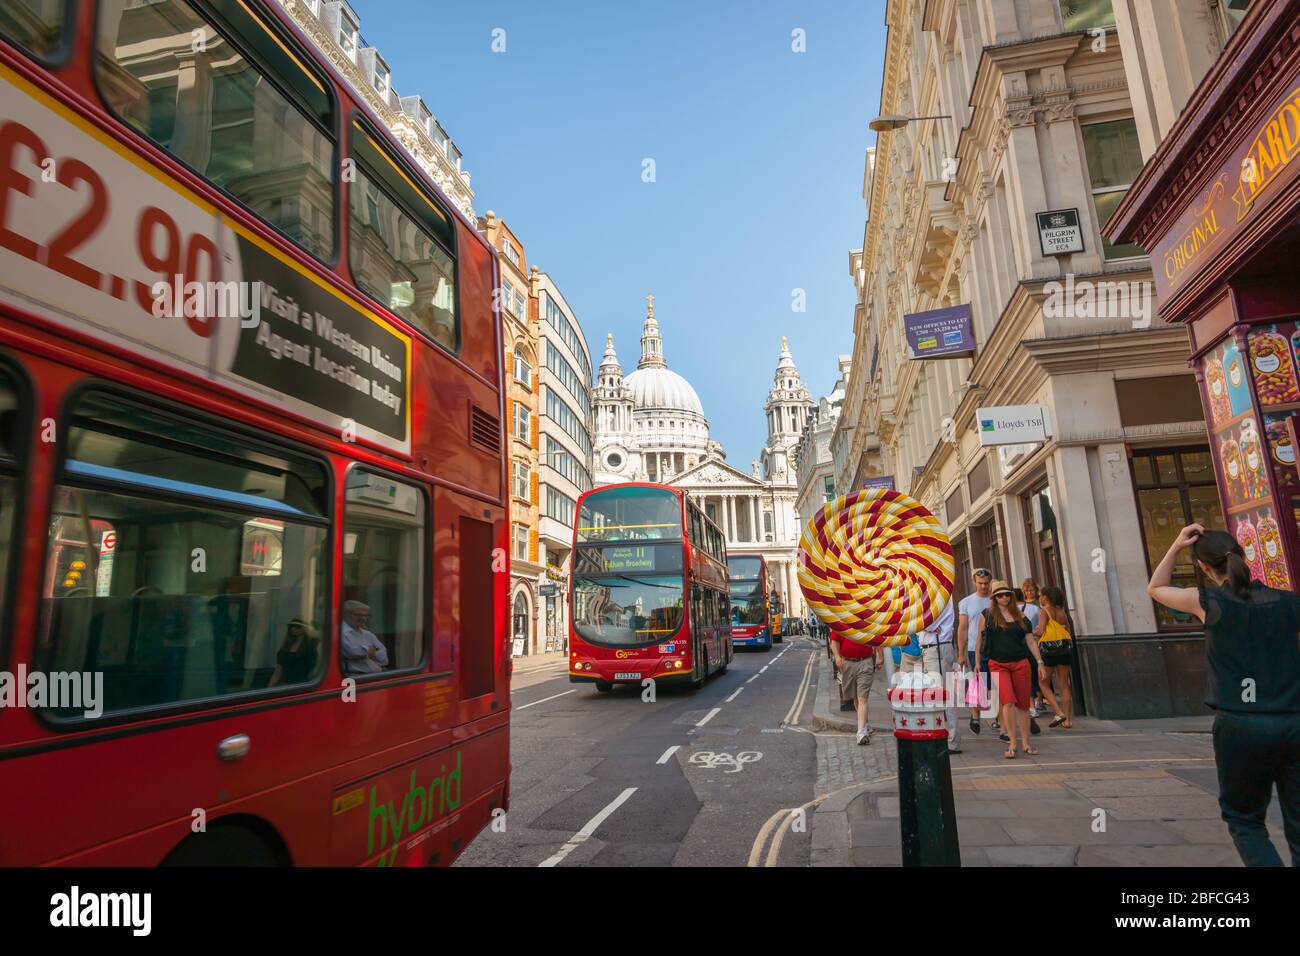 London England - Juli 19 2013; Londoner Straßenszene mit Doppeldeckerbussen, die an einem riesigen Lollypop vorbeifahren, während die Leute vorbeilaufen. Stockfoto